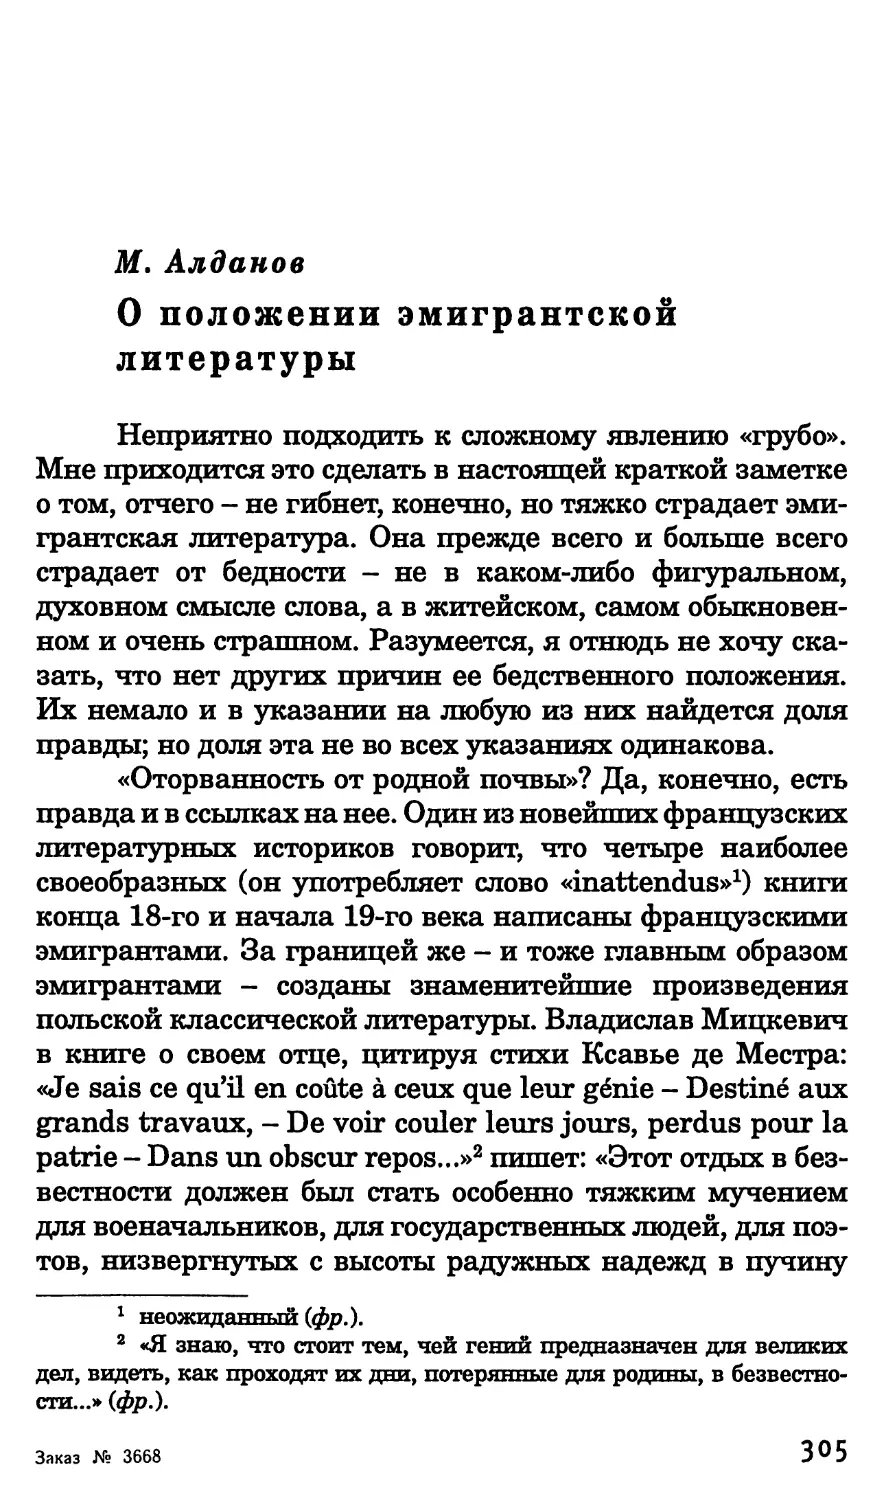 М. Алданов. О положении эмигрантской литературы